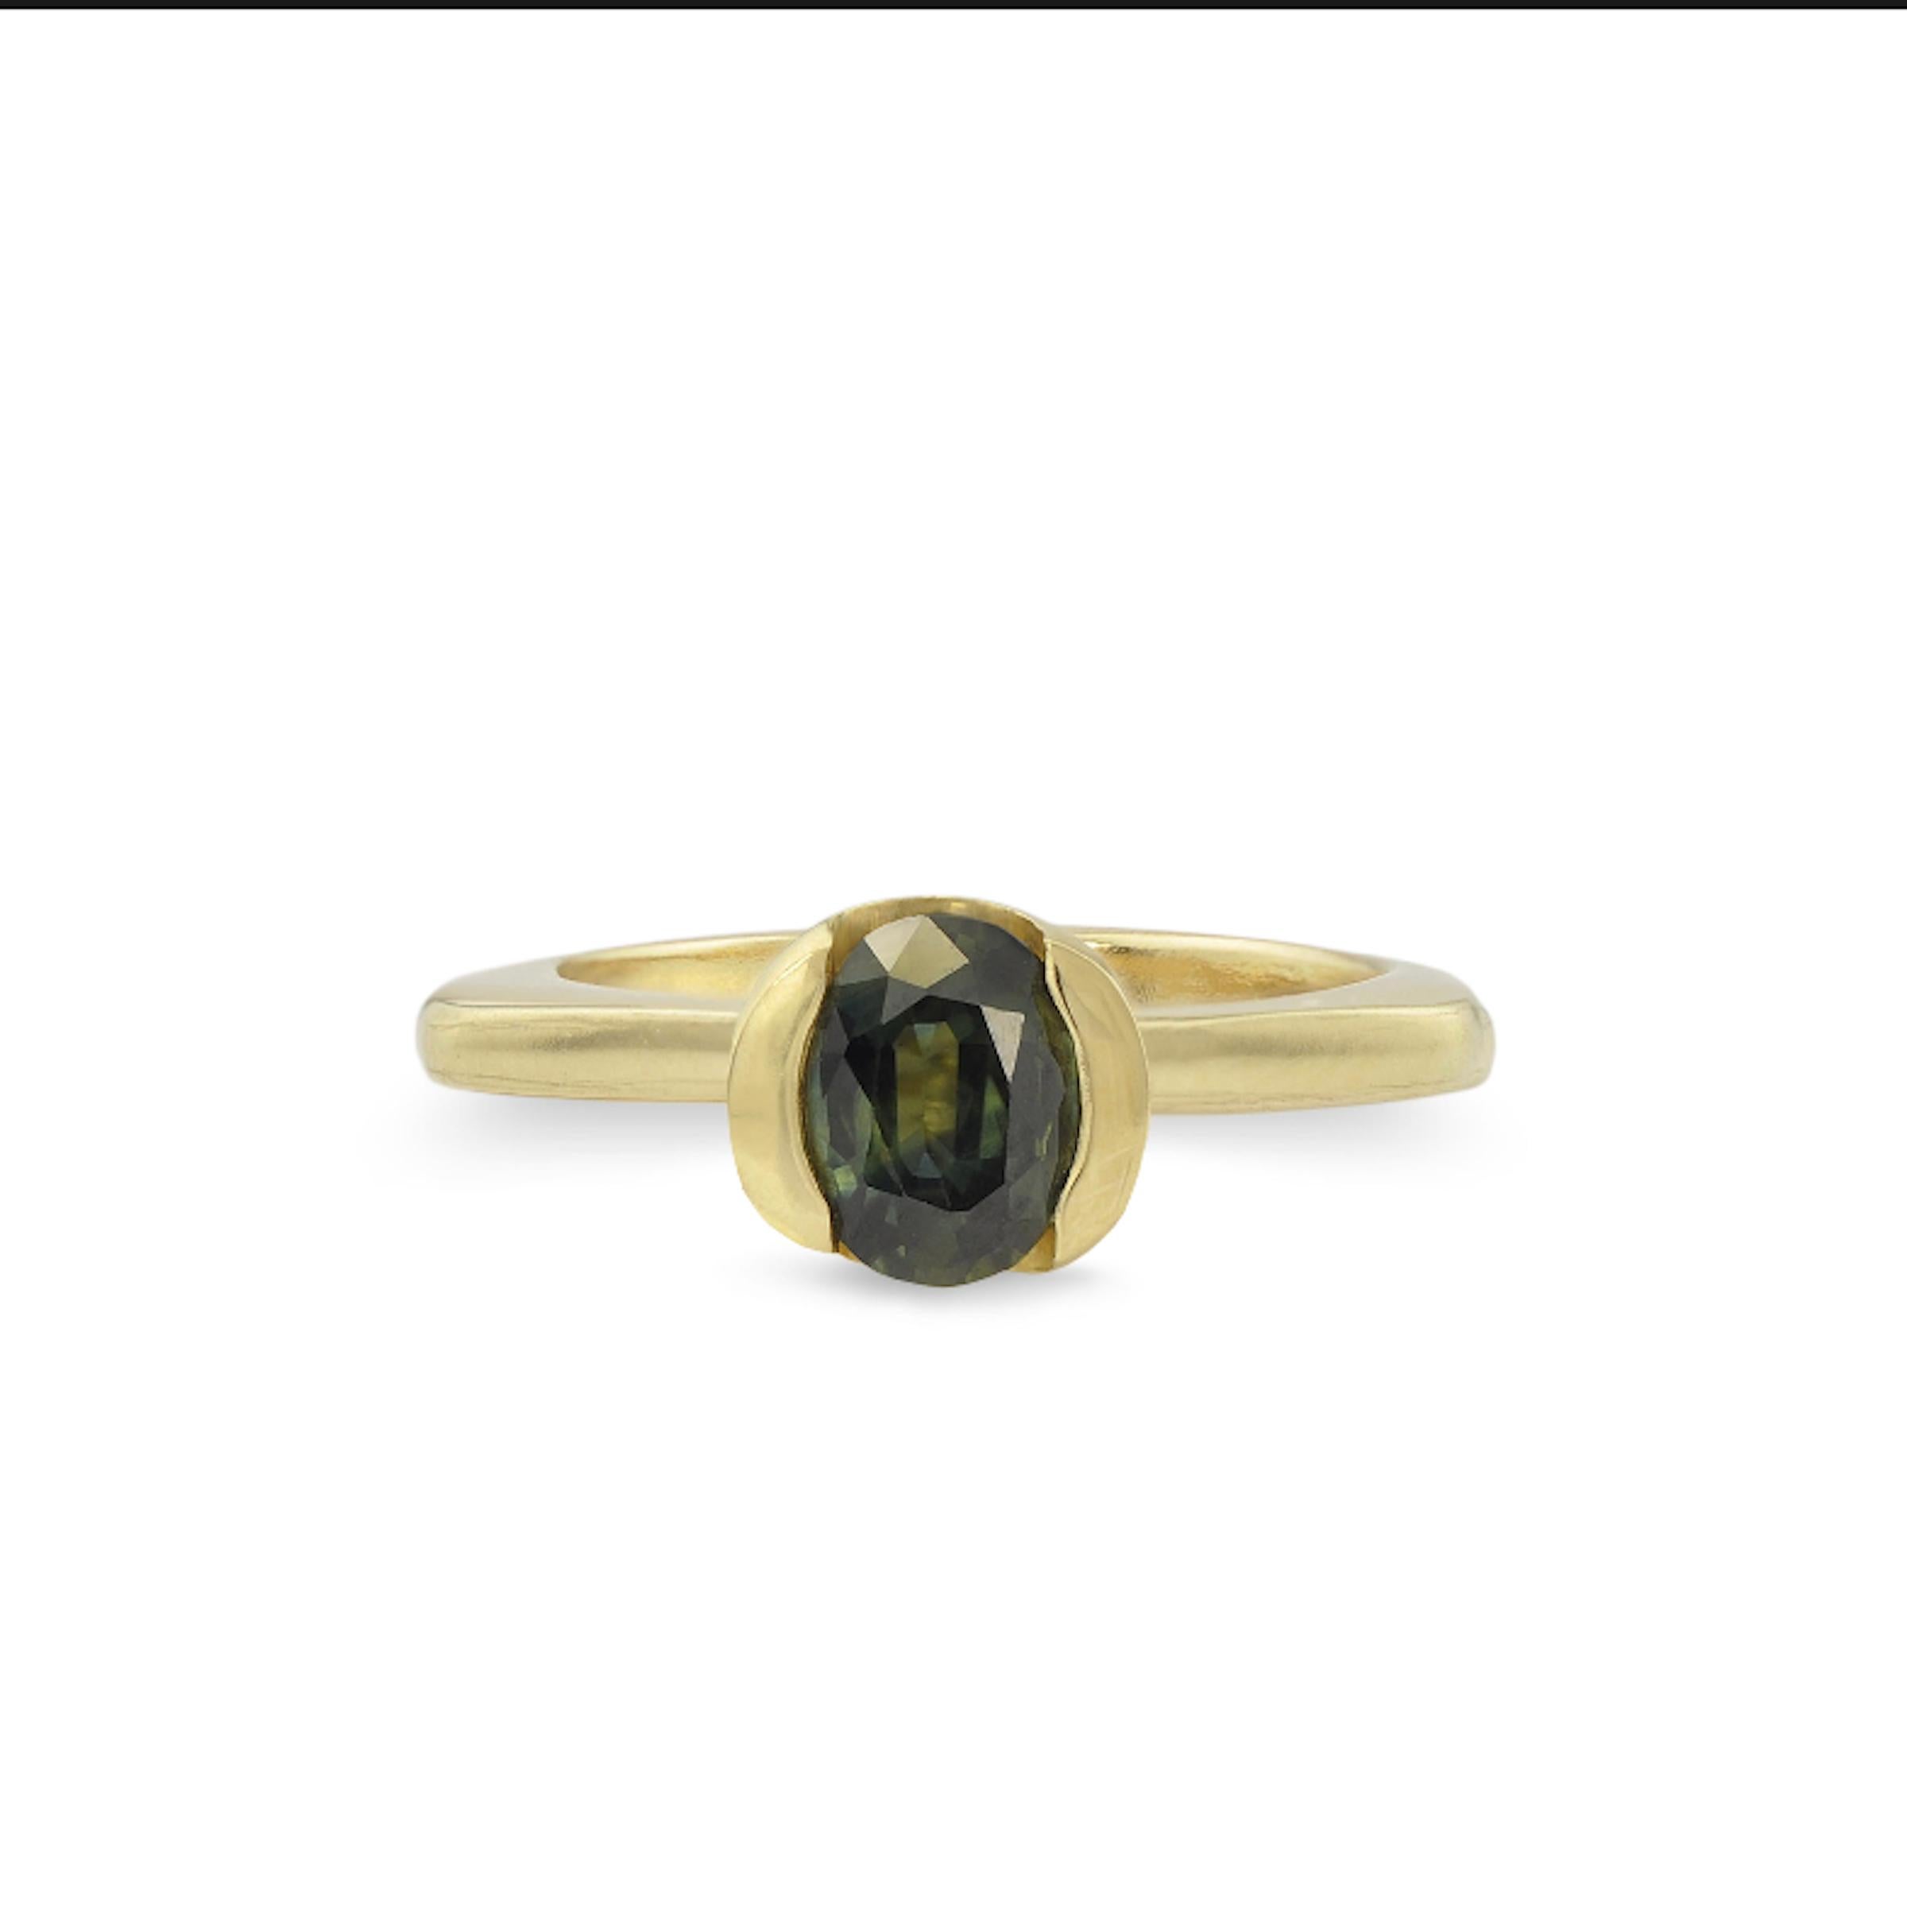 Dieses Ring-Set aus FAIRMINED-Gold und grünem Saphir enthält einen üppigen ovalen grünen Saphir, der in einen Ring aus 14kt FAIRMINED-Gelbgold eingefasst ist. Der zweite Ring passt perfekt neben den Saphirring und ergänzt die weichen Linien und den